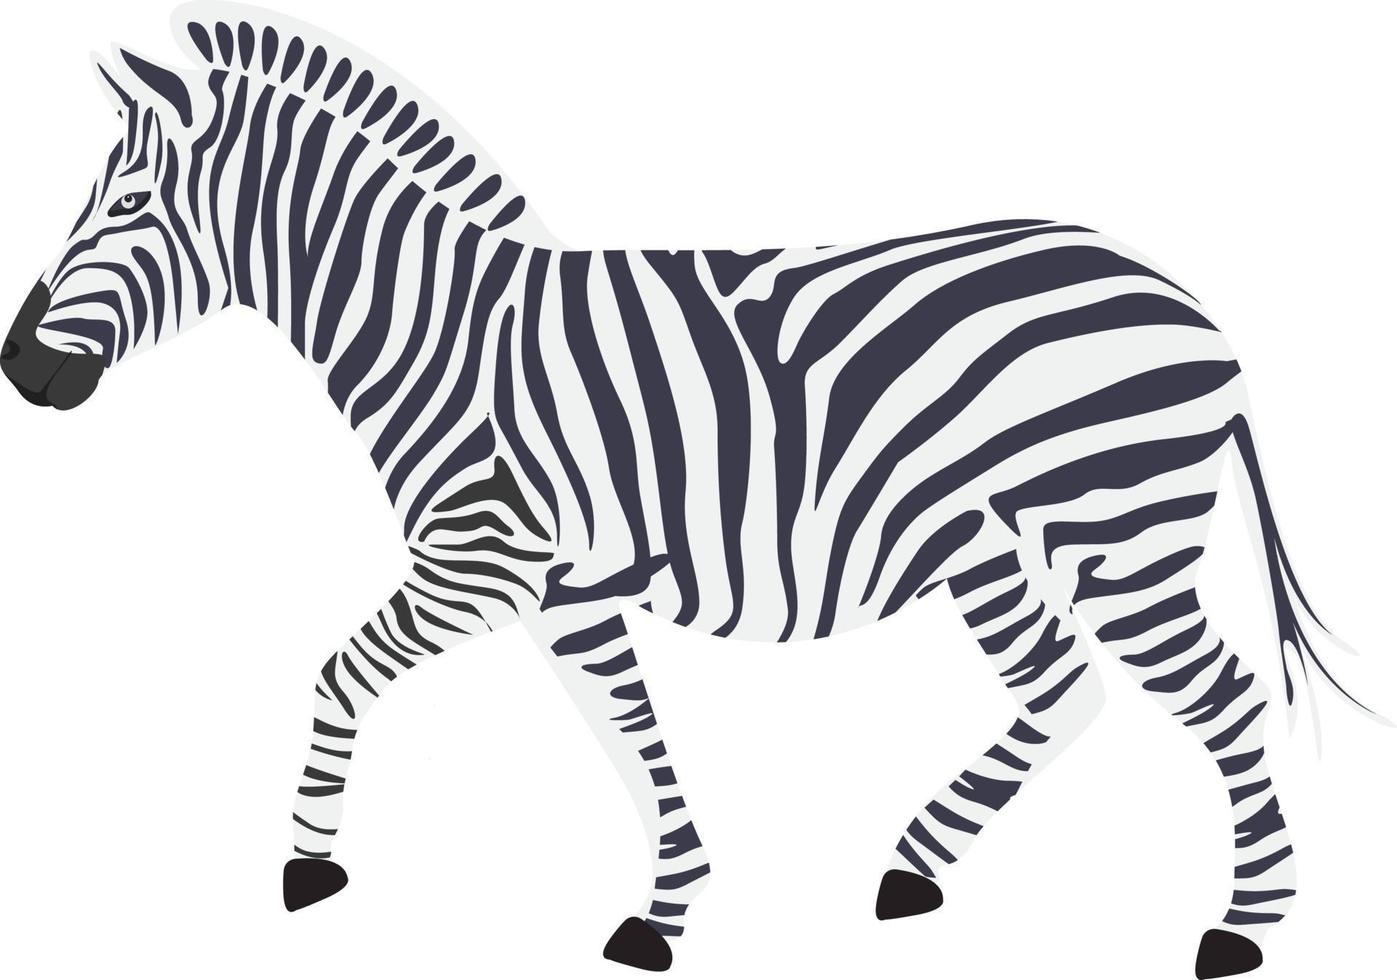 Small zebra,illustration, vector on white background.